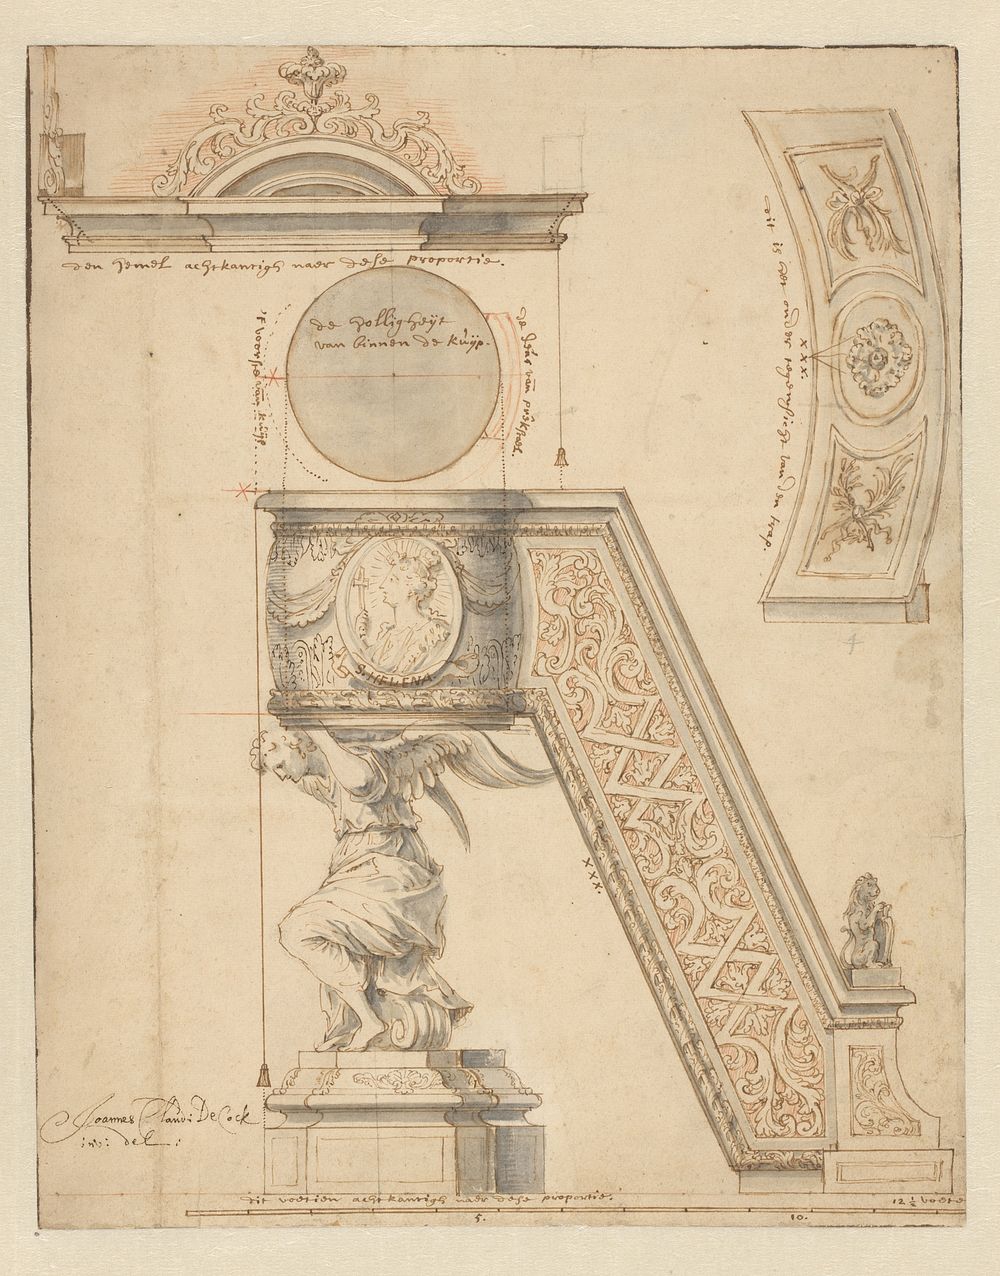 Ontwerp voor een preekstoel (1678 - 1736) by Jan Claudius de Cock